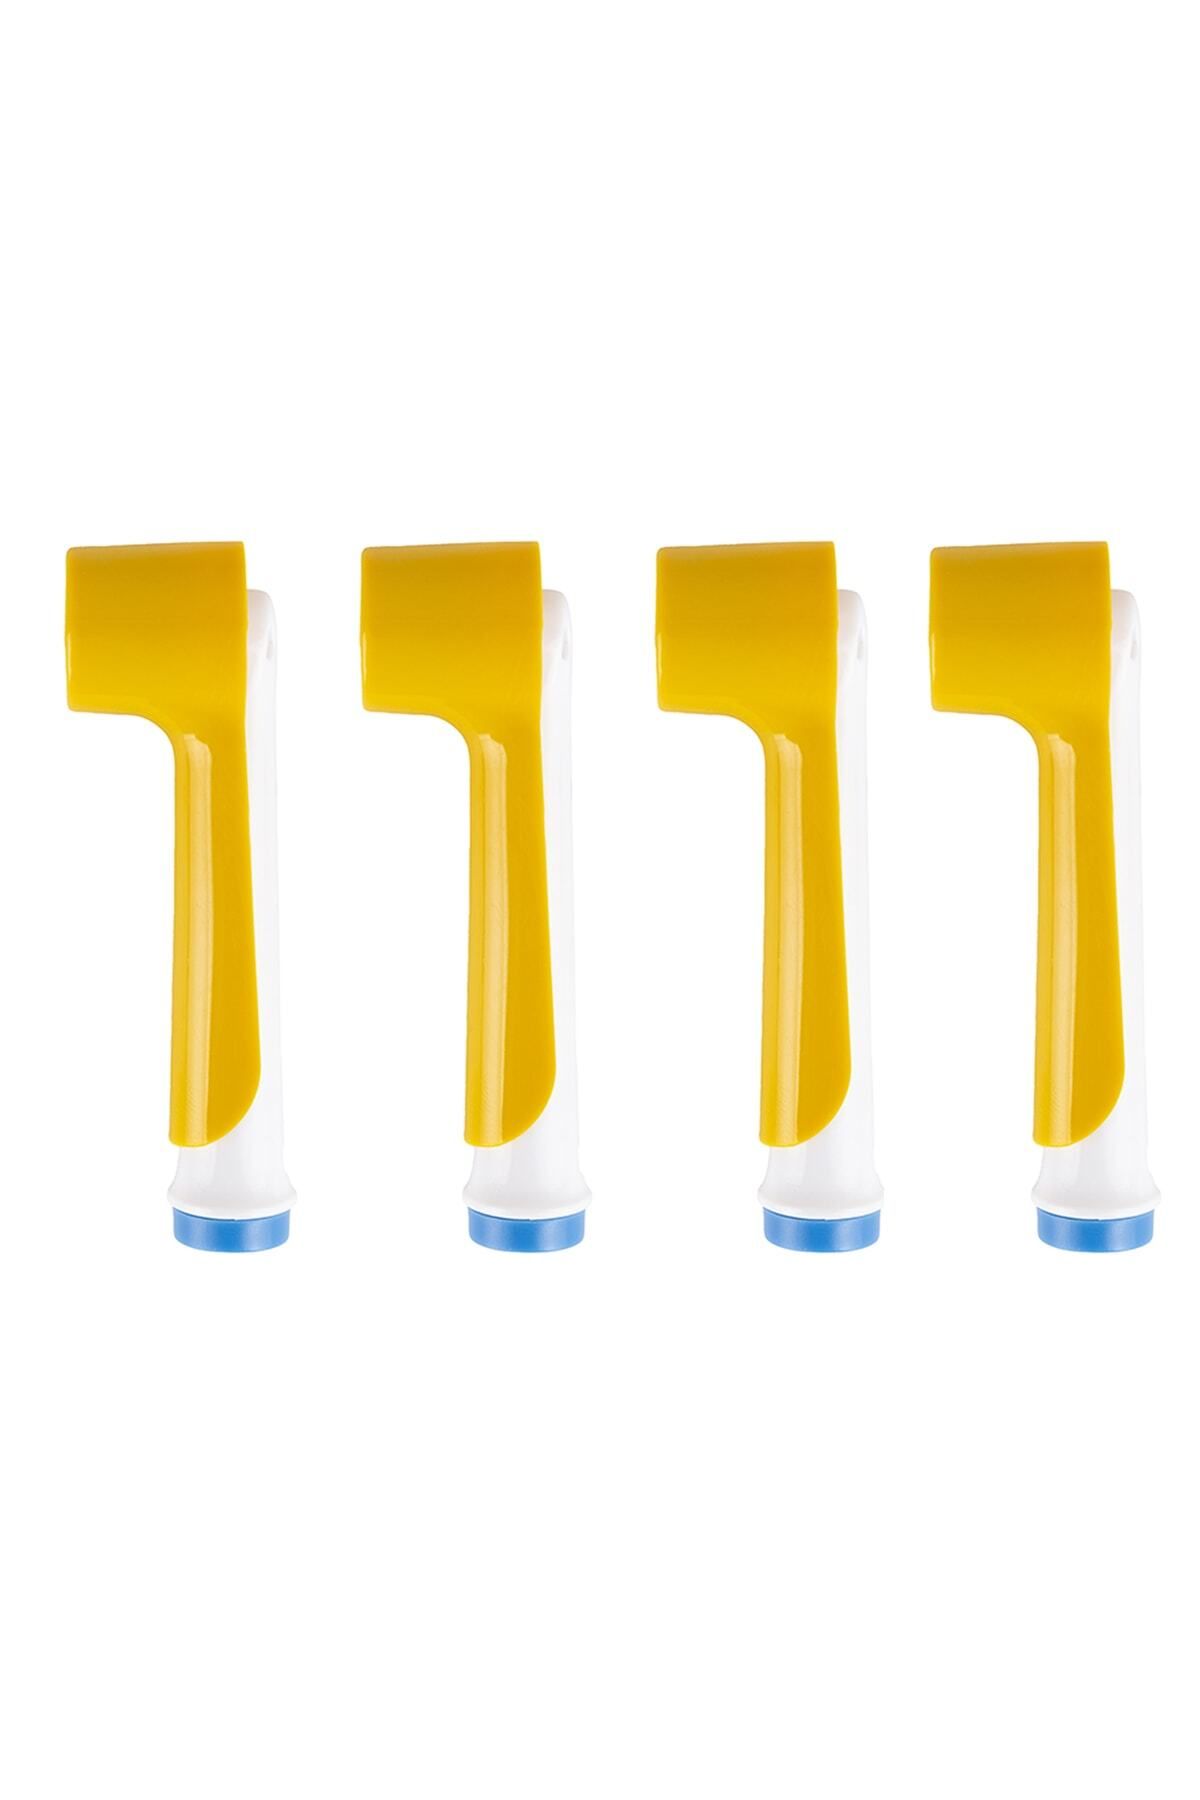 ibrush Şarjlı ve Pilli Diş Fırçaları Için 4 Adet Altın Renk Koruyucu Kapak